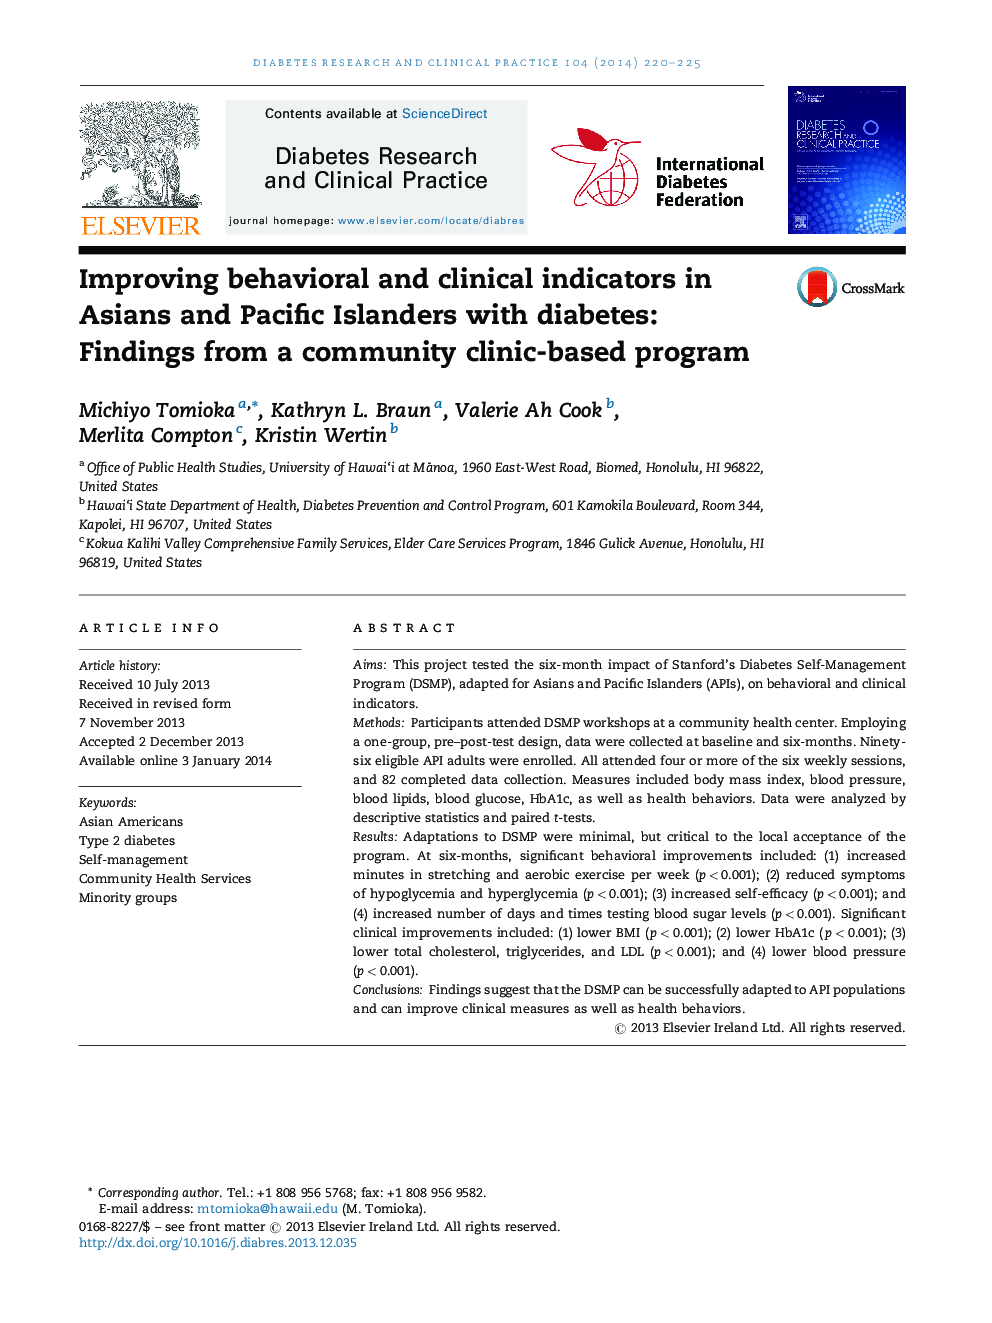 بهبود علائم رفتاری و بالینی در کشورهای آسیایی و اقیانوس آرام با دیابت: یافته های یک برنامه مبتنی بر کلینیک جامعه 